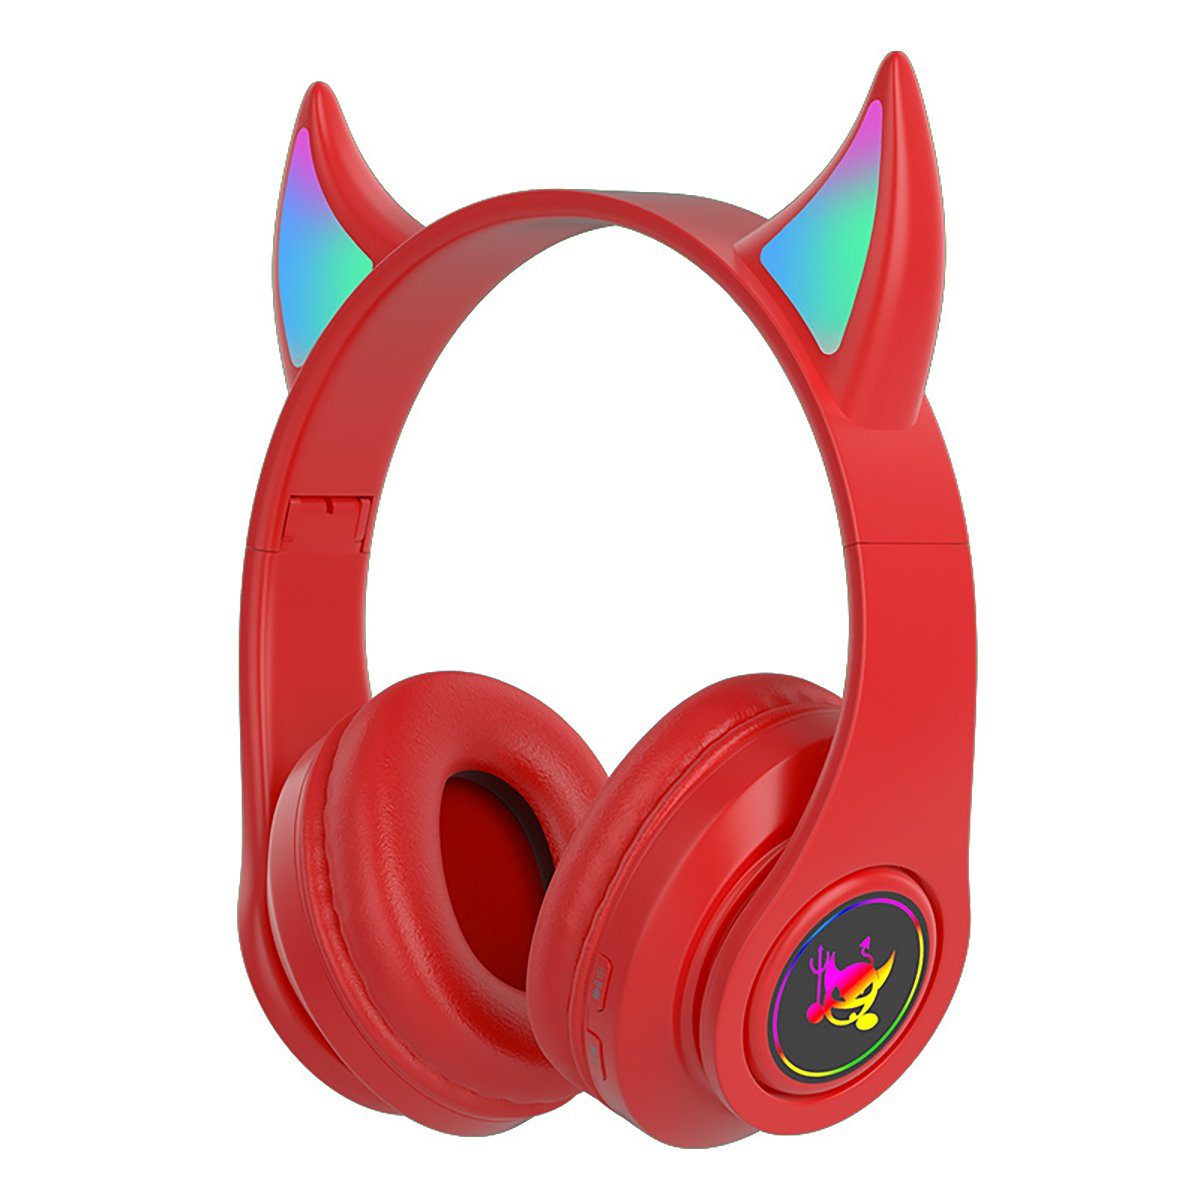 Insma On-Ear-Kopfhörer (Kabelloses Gaming-Headset, Stero bluetooth 5.0 Kopfhörer LED-Licht) Rot | On-Ear-Kopfhörer